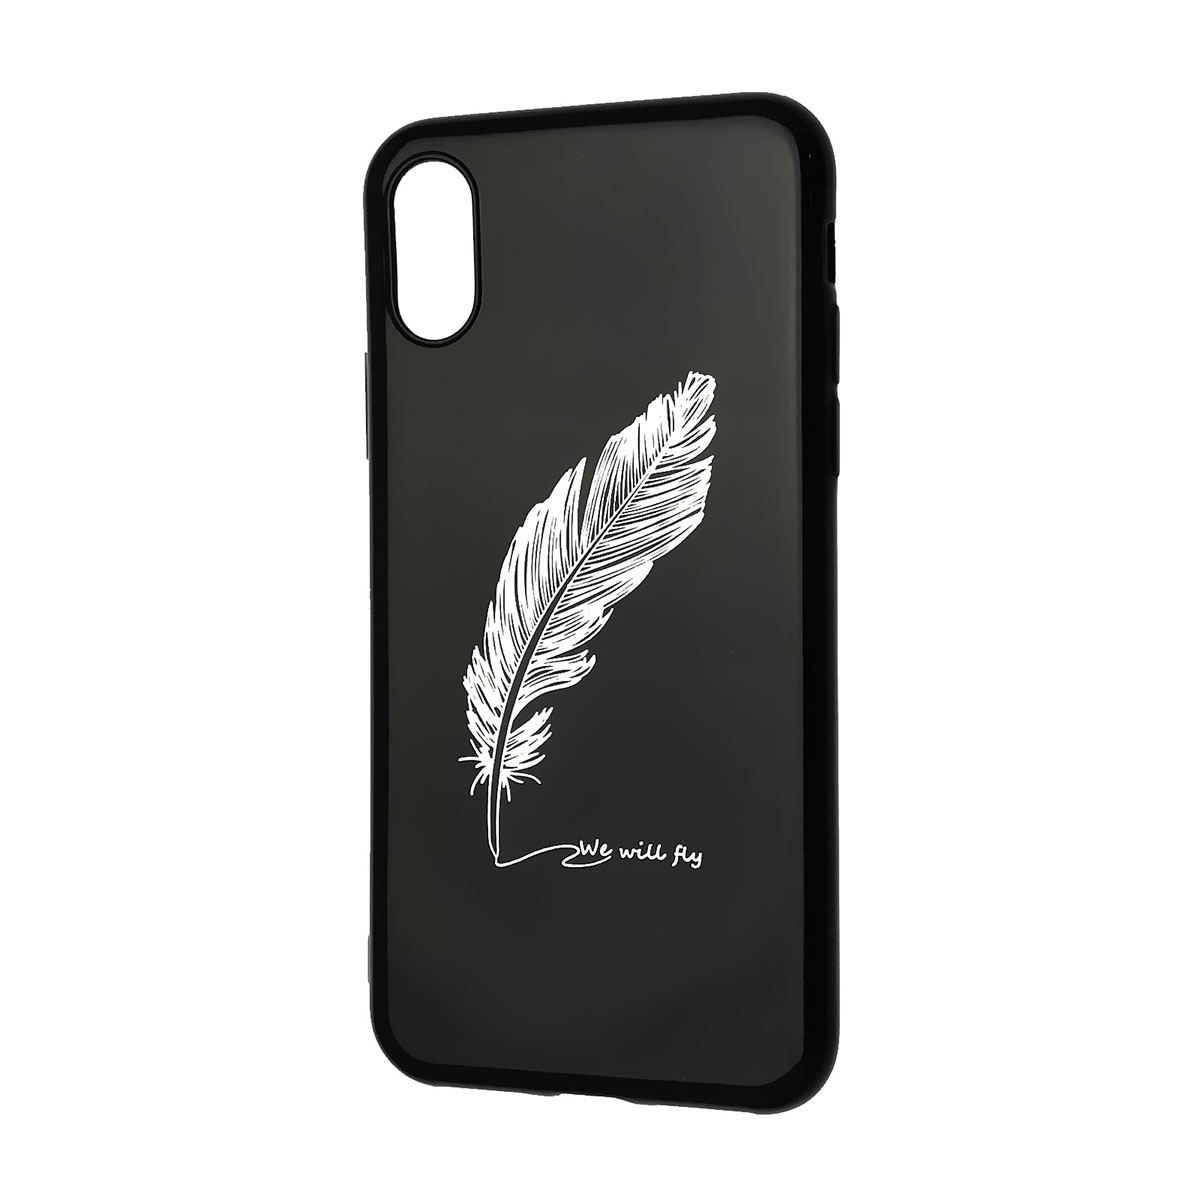 Чехол накладка для APPLE iPhone X, iPhone XS, силикон, глянцевый, рисунок Перо черное.